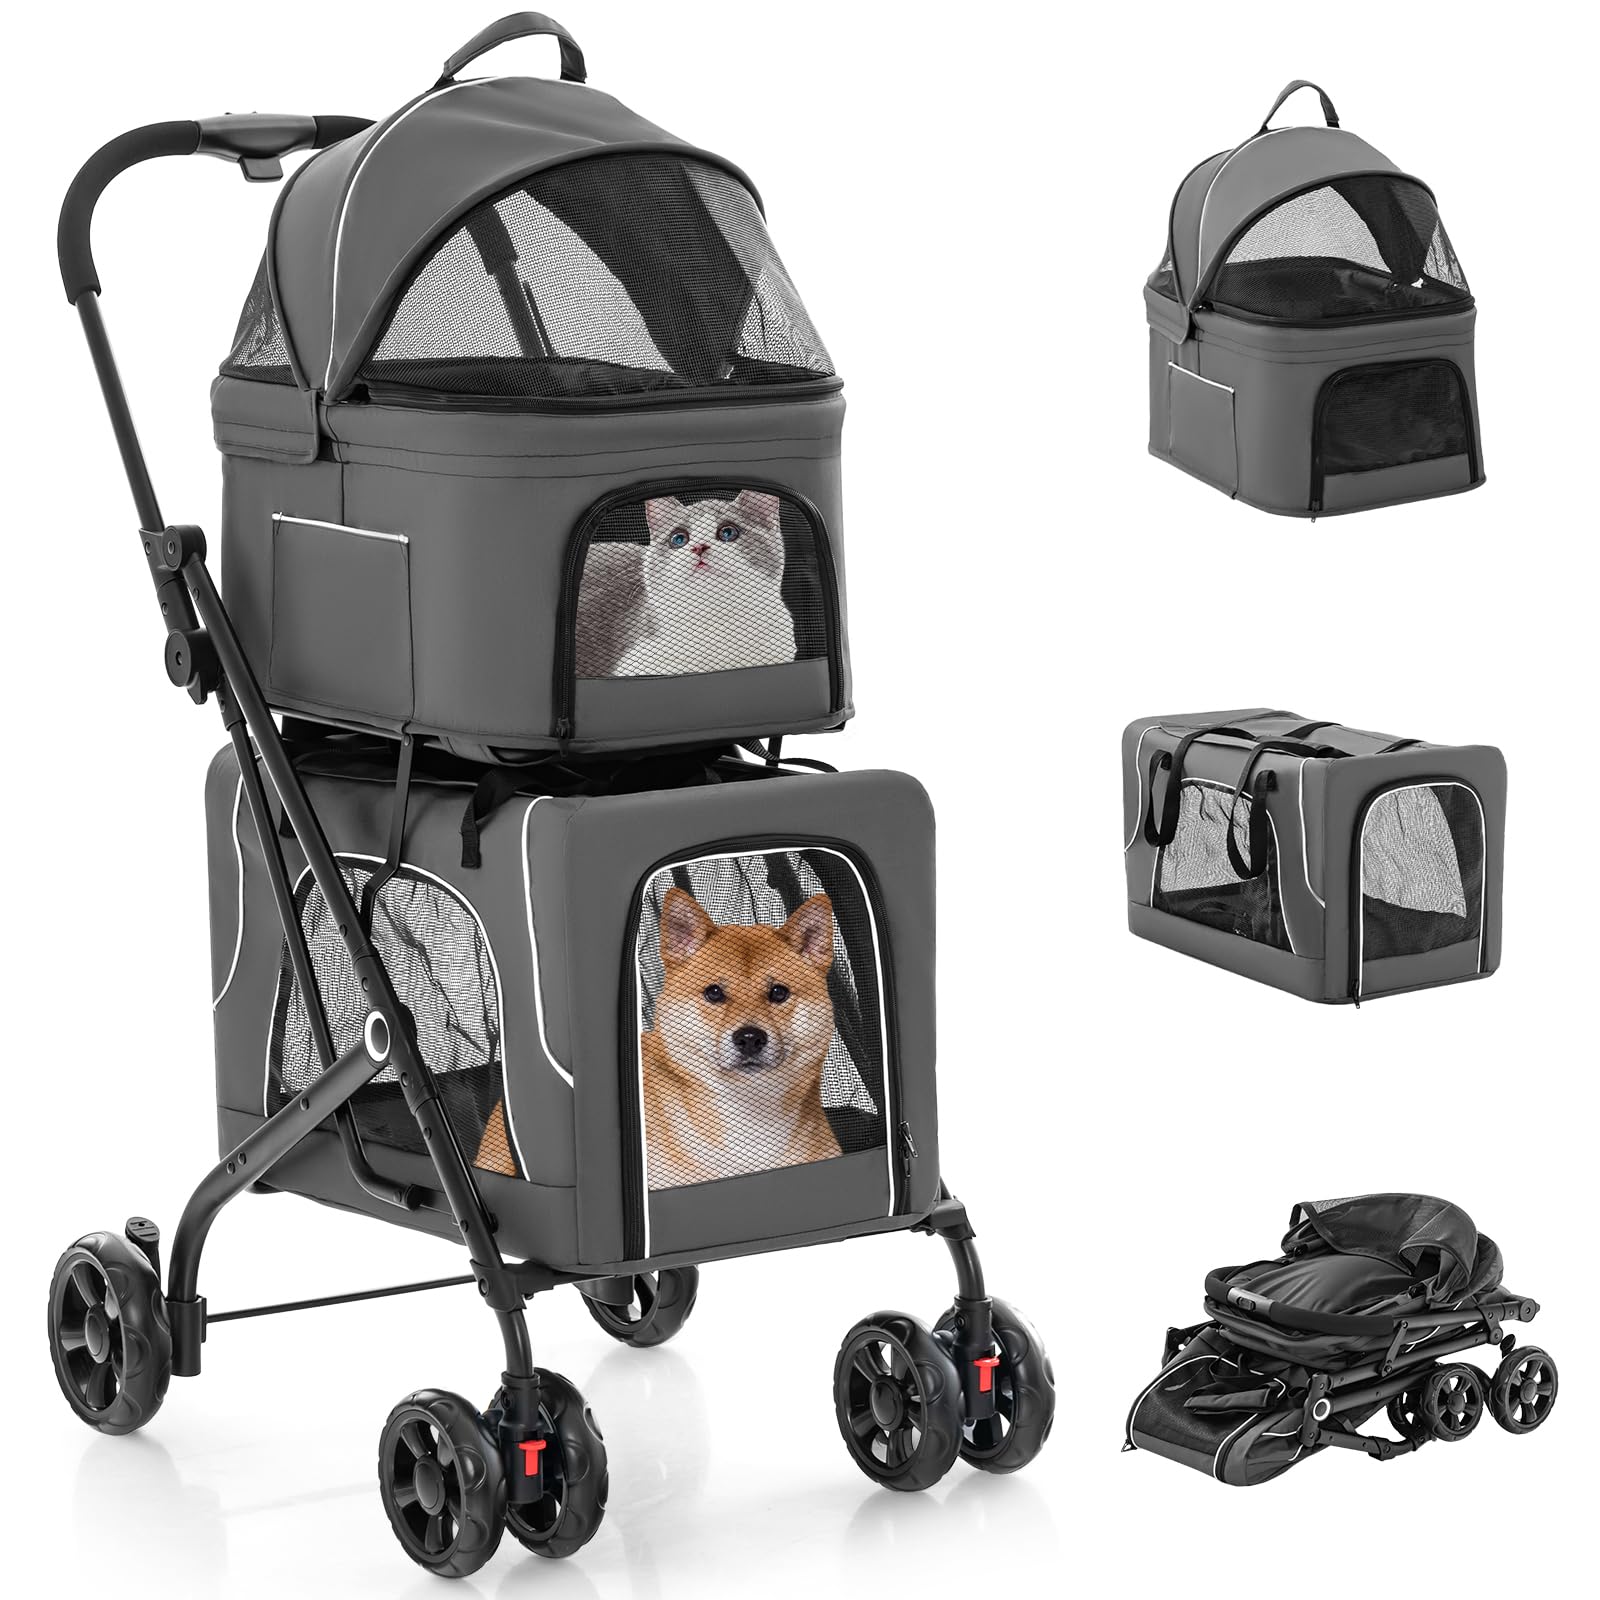 Giantex Double Dog Stroller - Pet Stroller for 2 Dogs